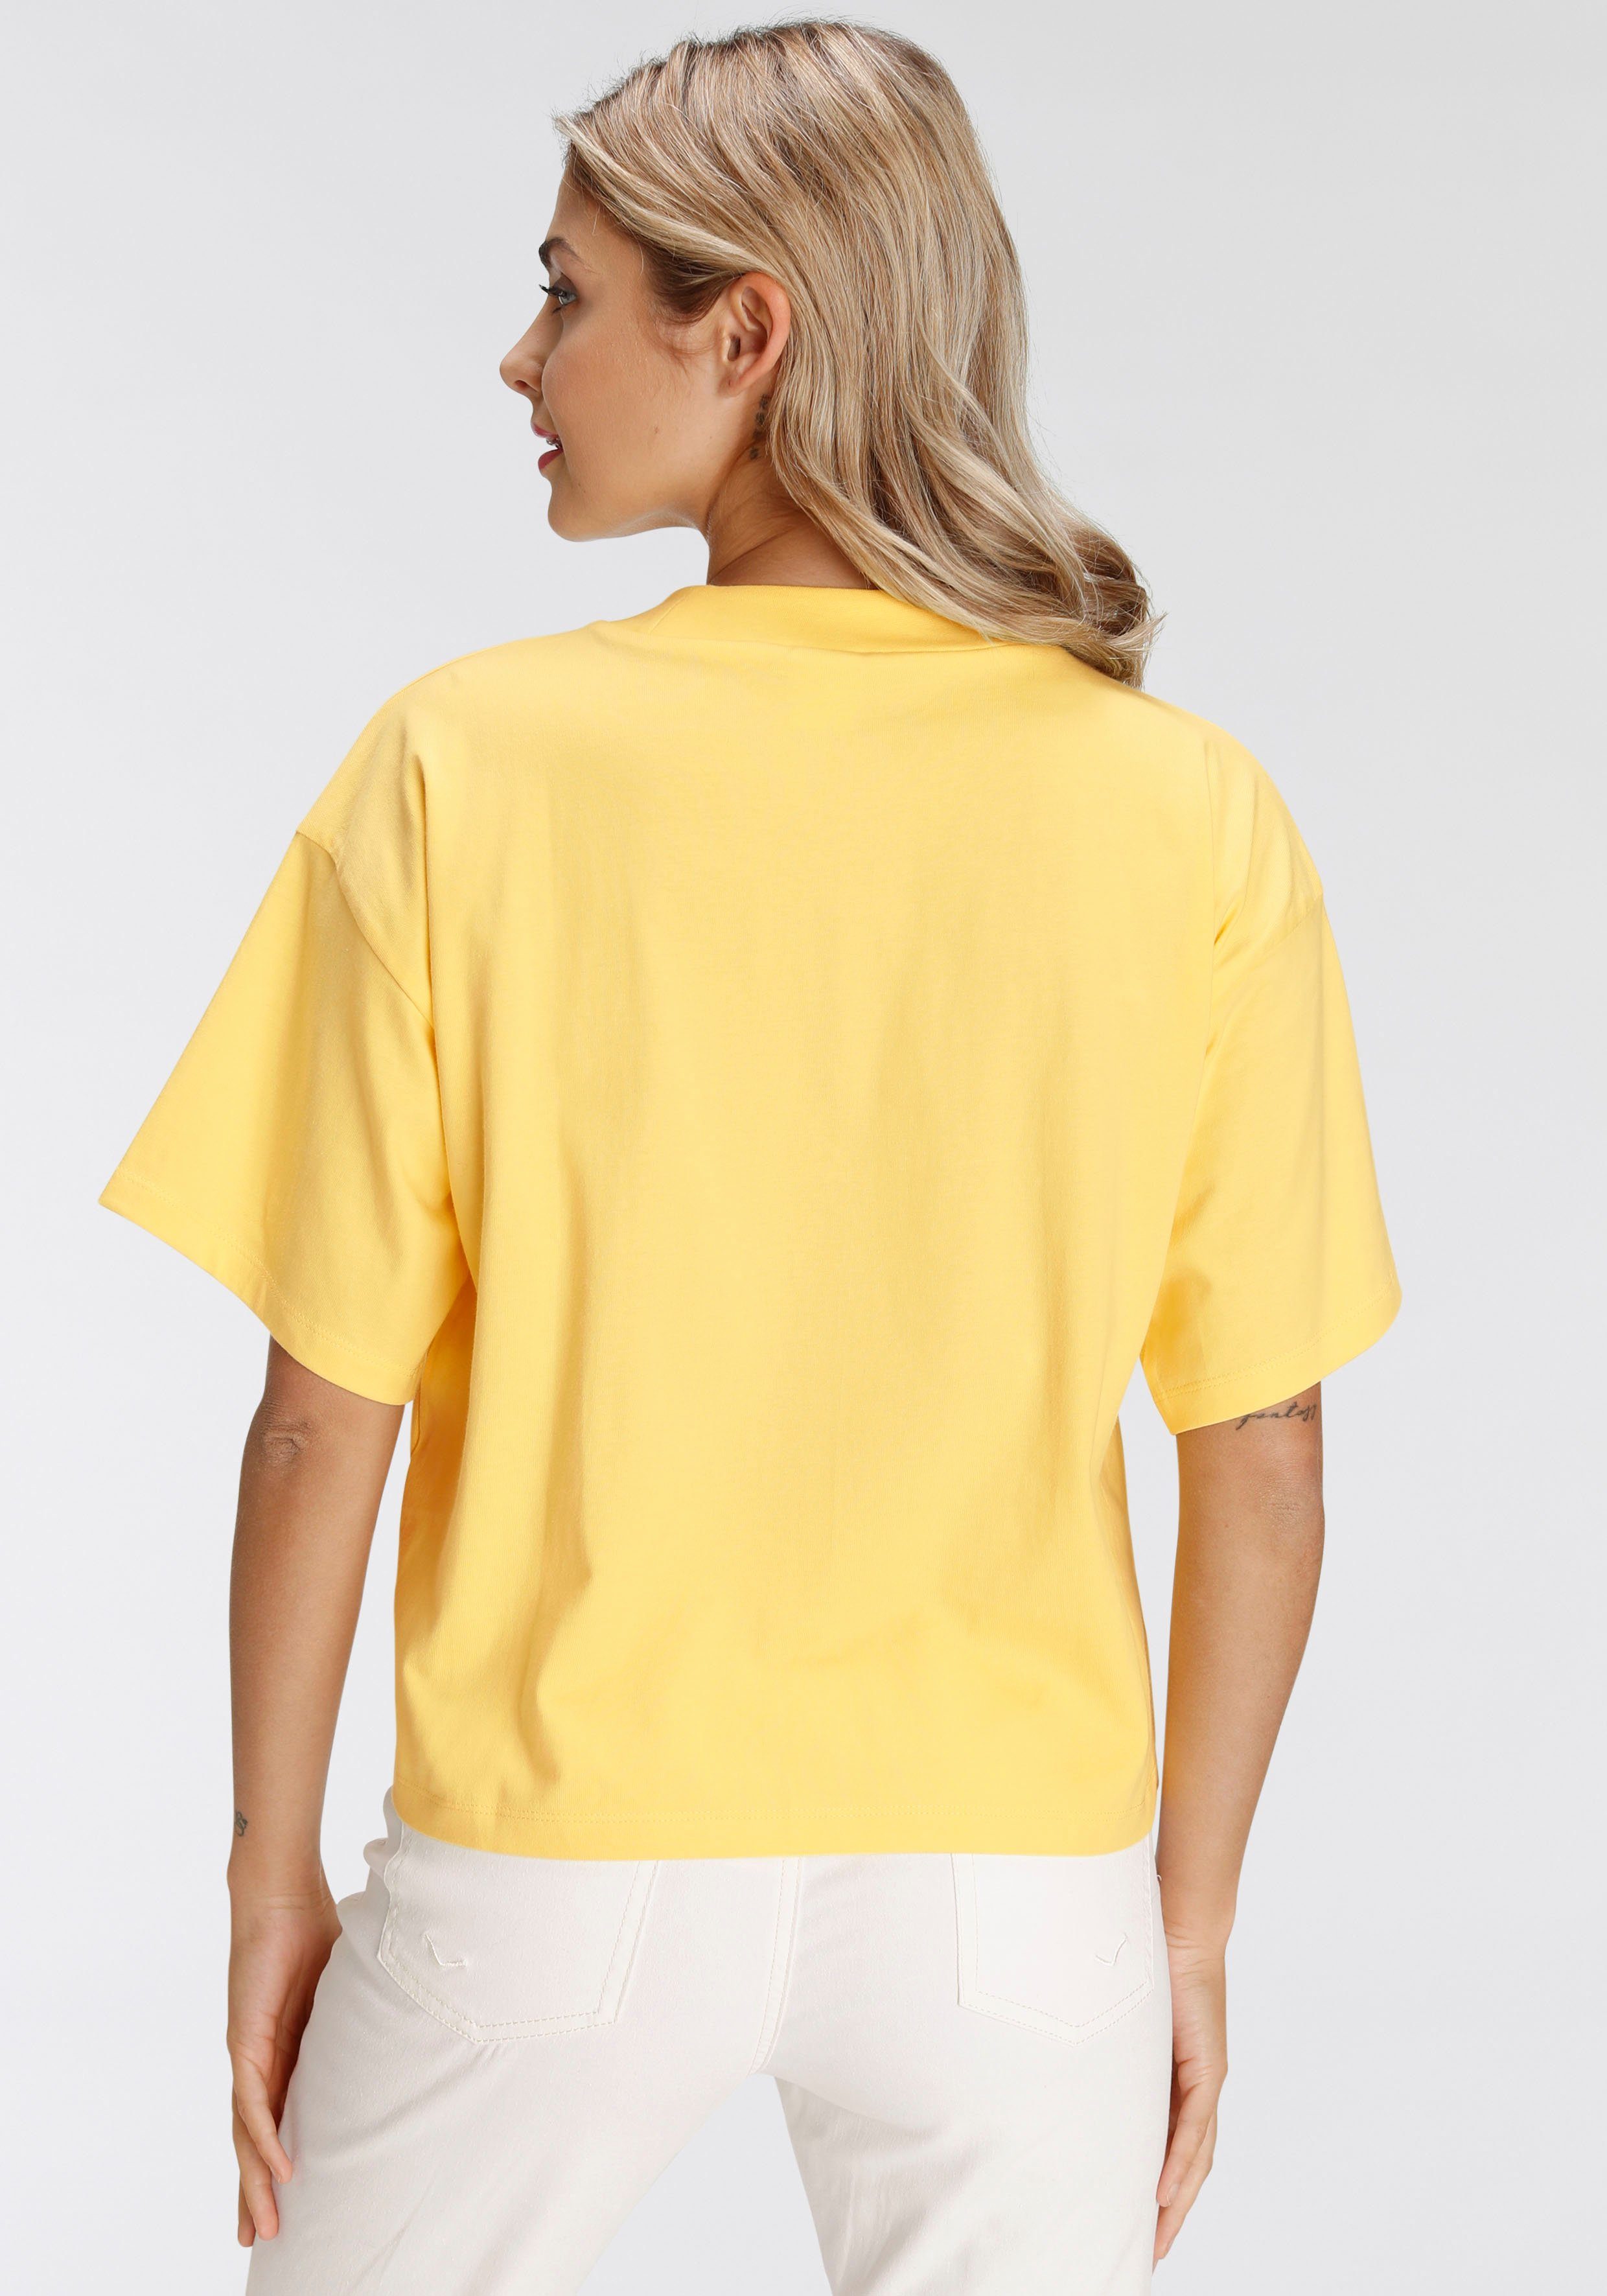 AJC Rippen-Rundhalsausschnitt mit breitem Oversize-Shirt modisch gelb vanille